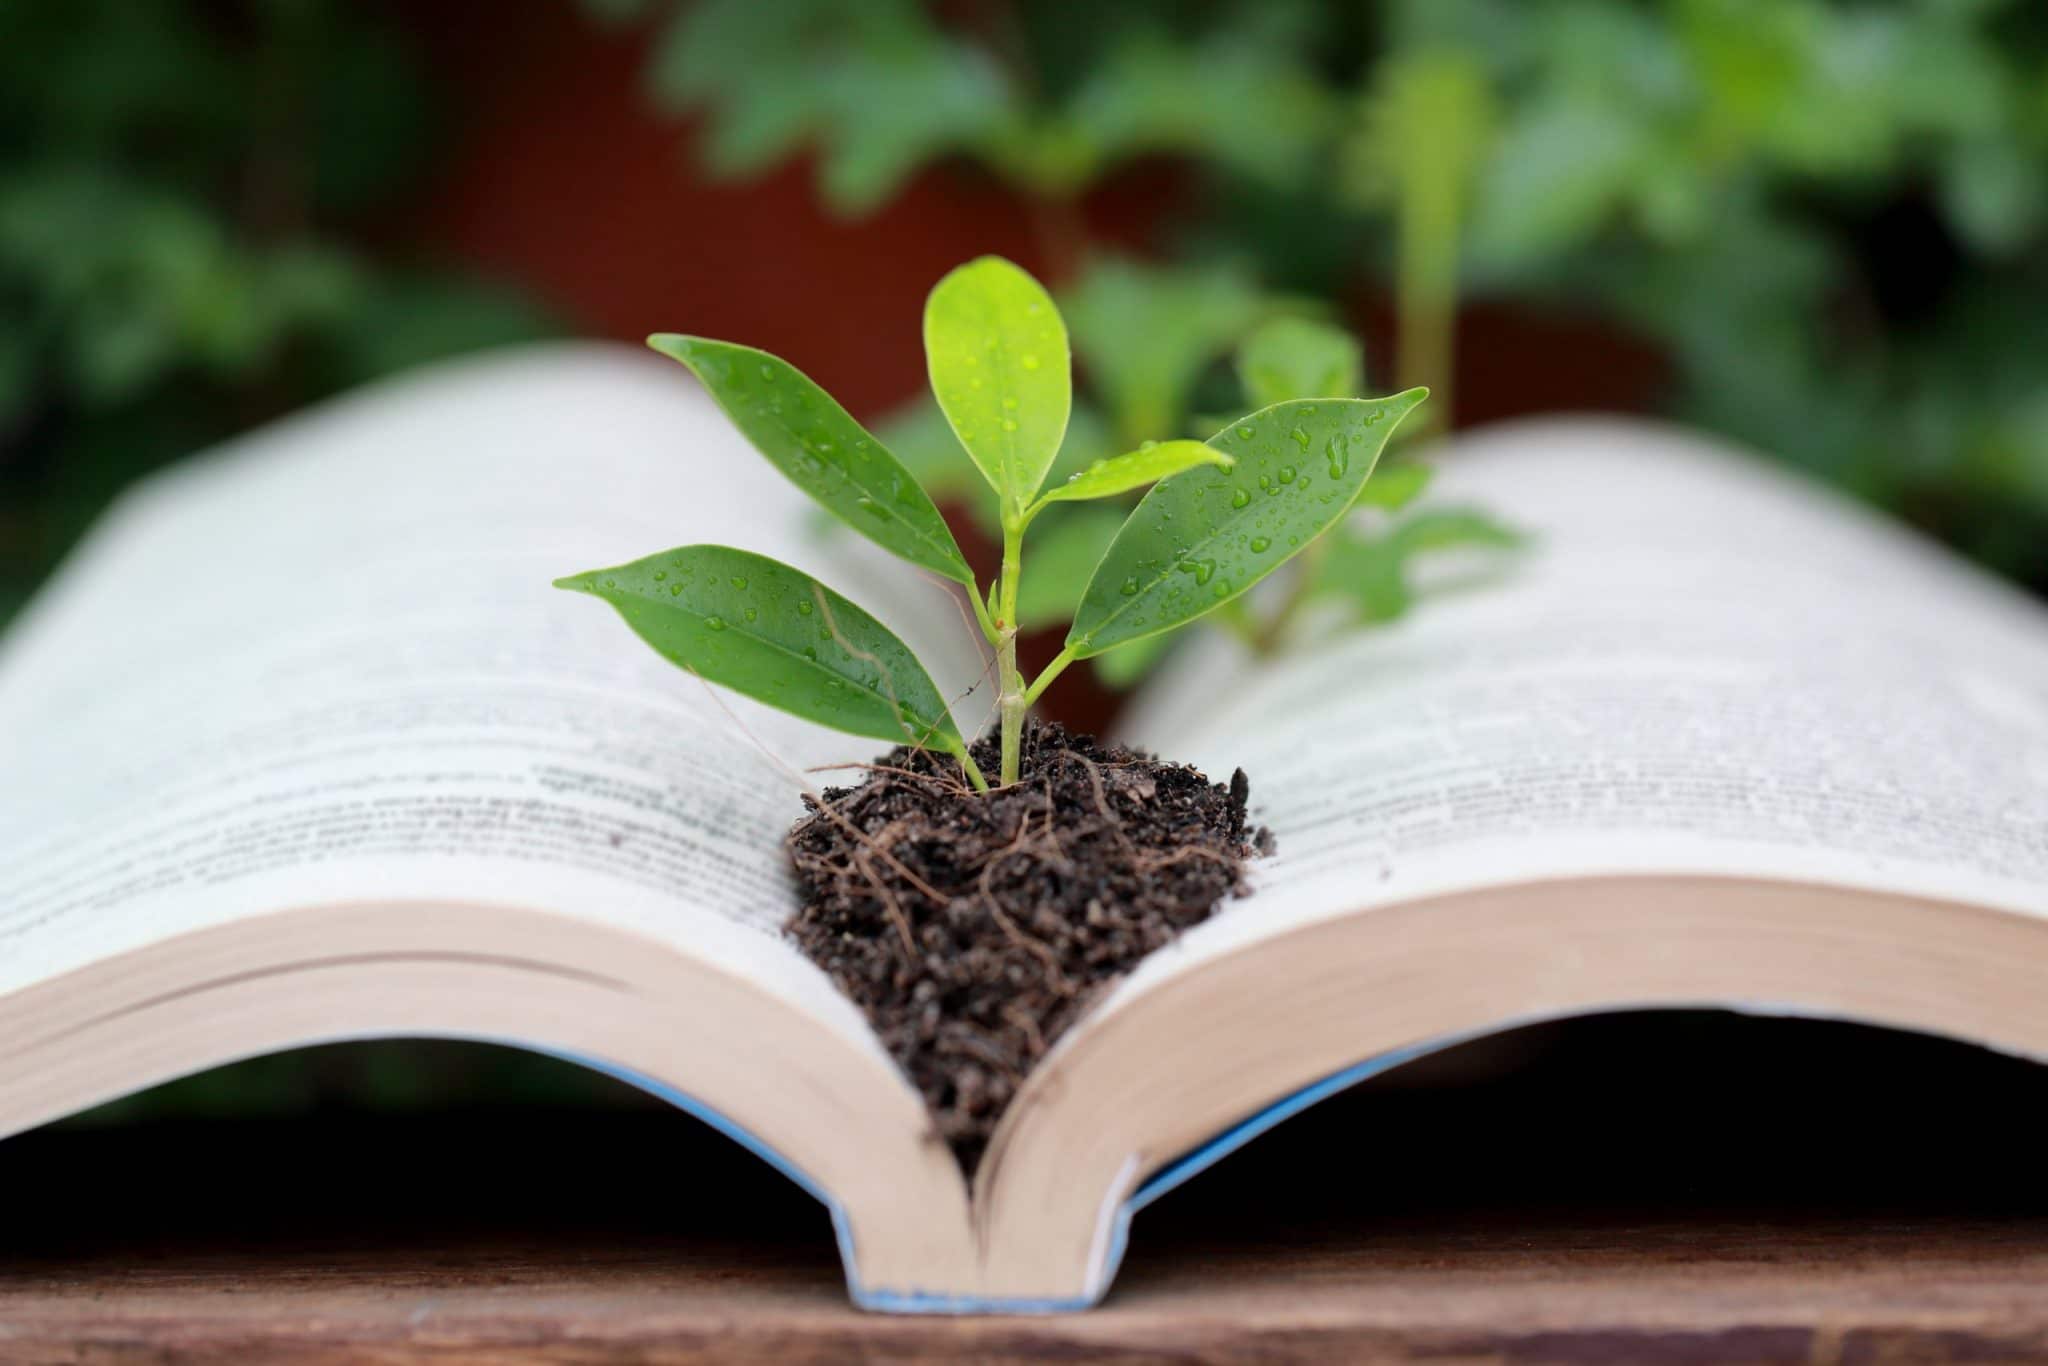 “Se nourrir de son jardin” : le guide pratique sur la permaculture